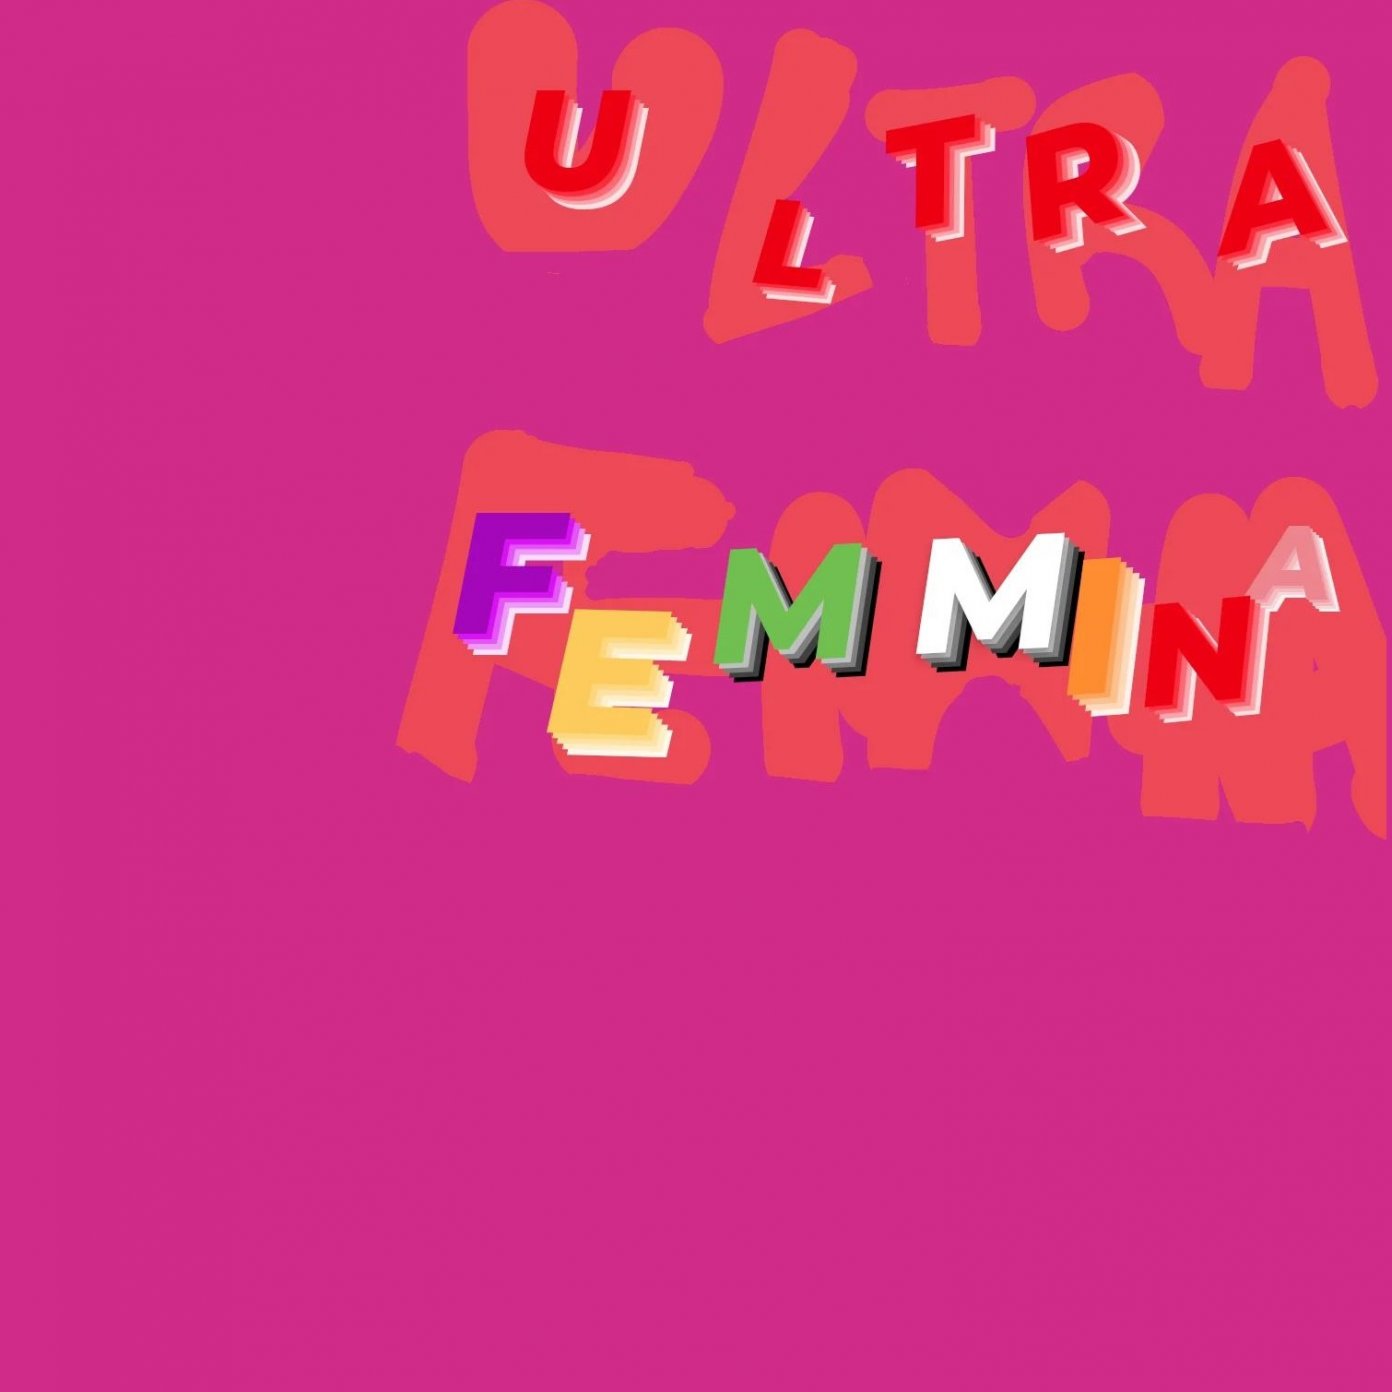 Ultra Femmina - Ciclo di incontri